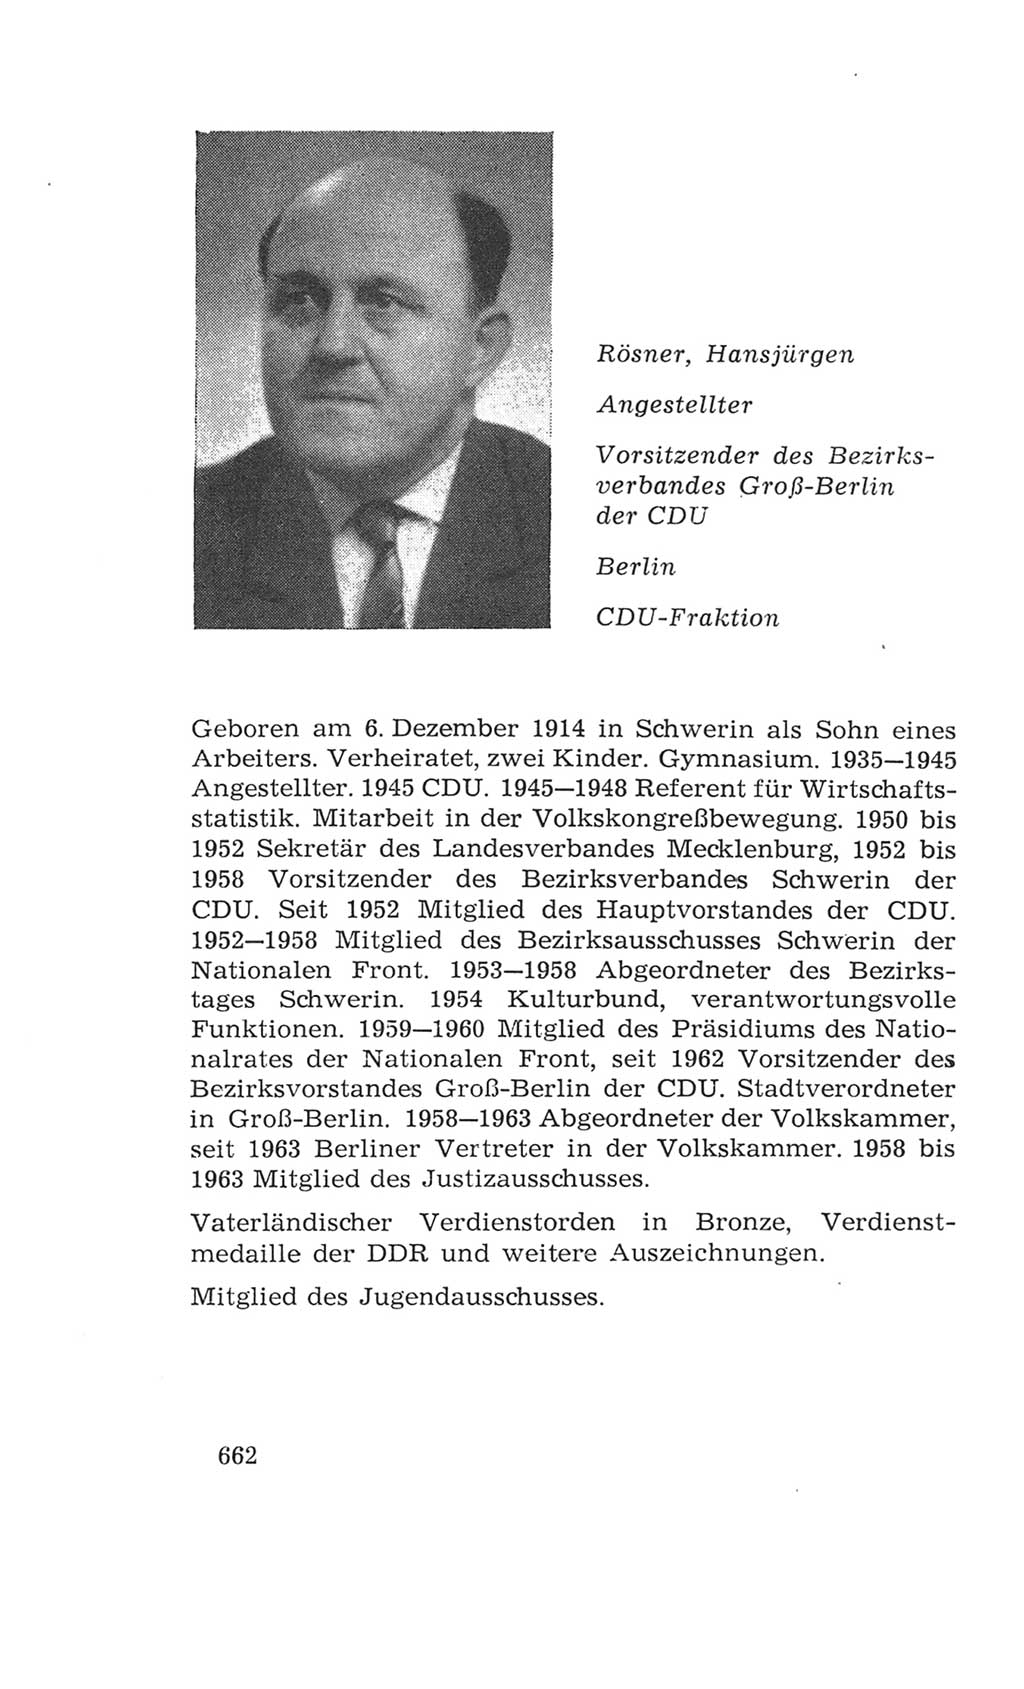 Volkskammer (VK) der Deutschen Demokratischen Republik (DDR), 4. Wahlperiode 1963-1967, Seite 662 (VK. DDR 4. WP. 1963-1967, S. 662)